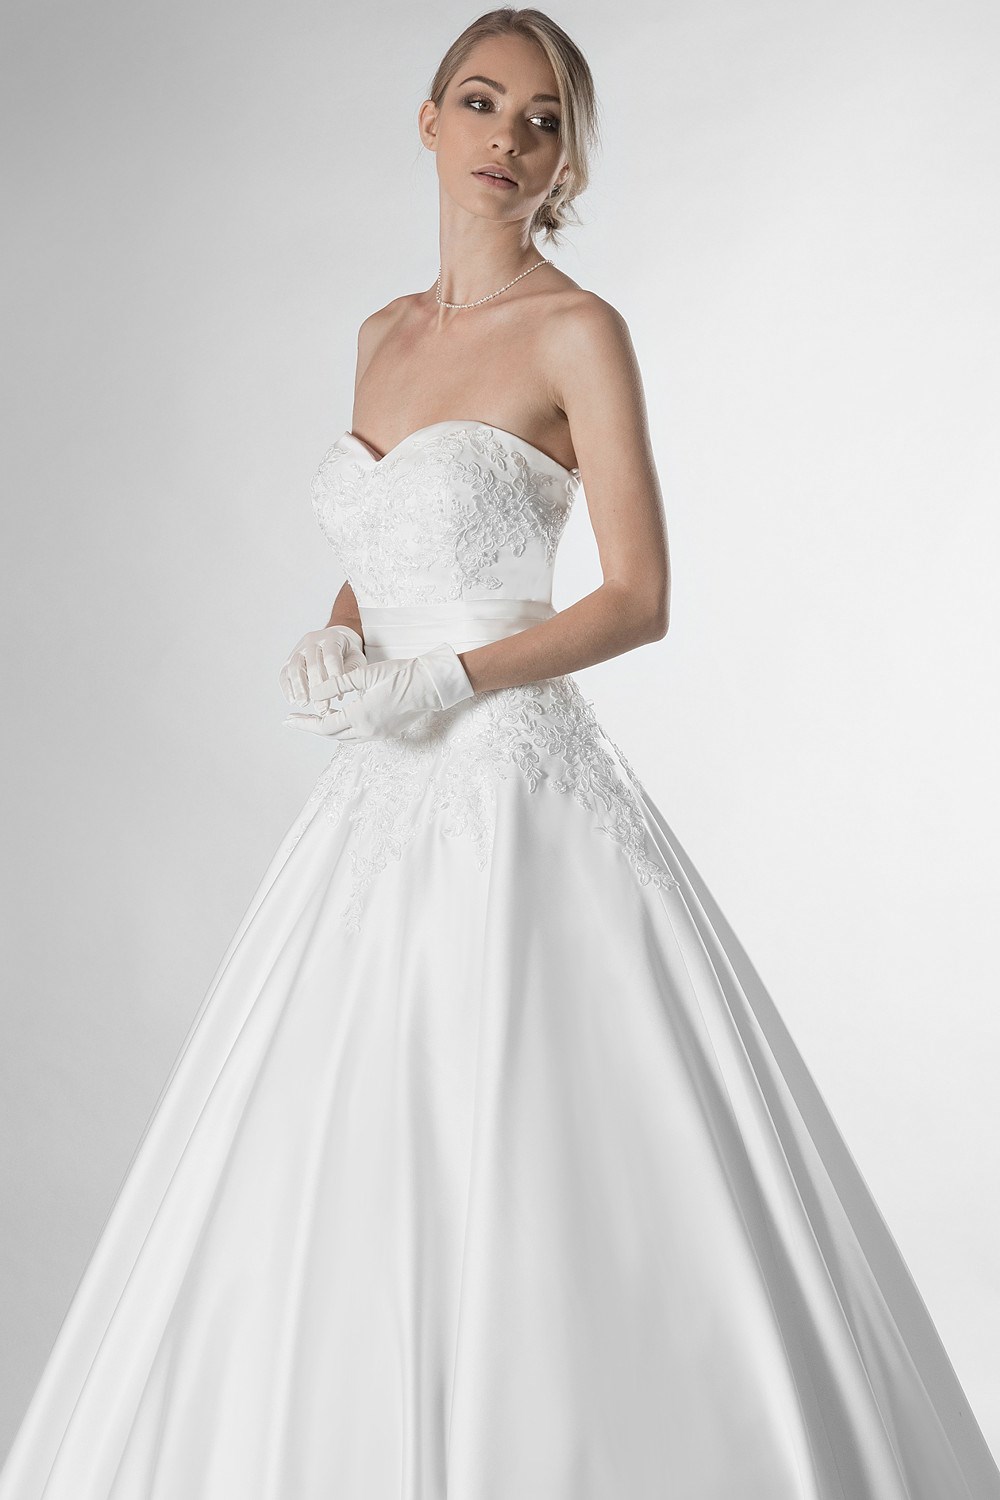 Wedding dresses Collezione - Claudia : C 425 